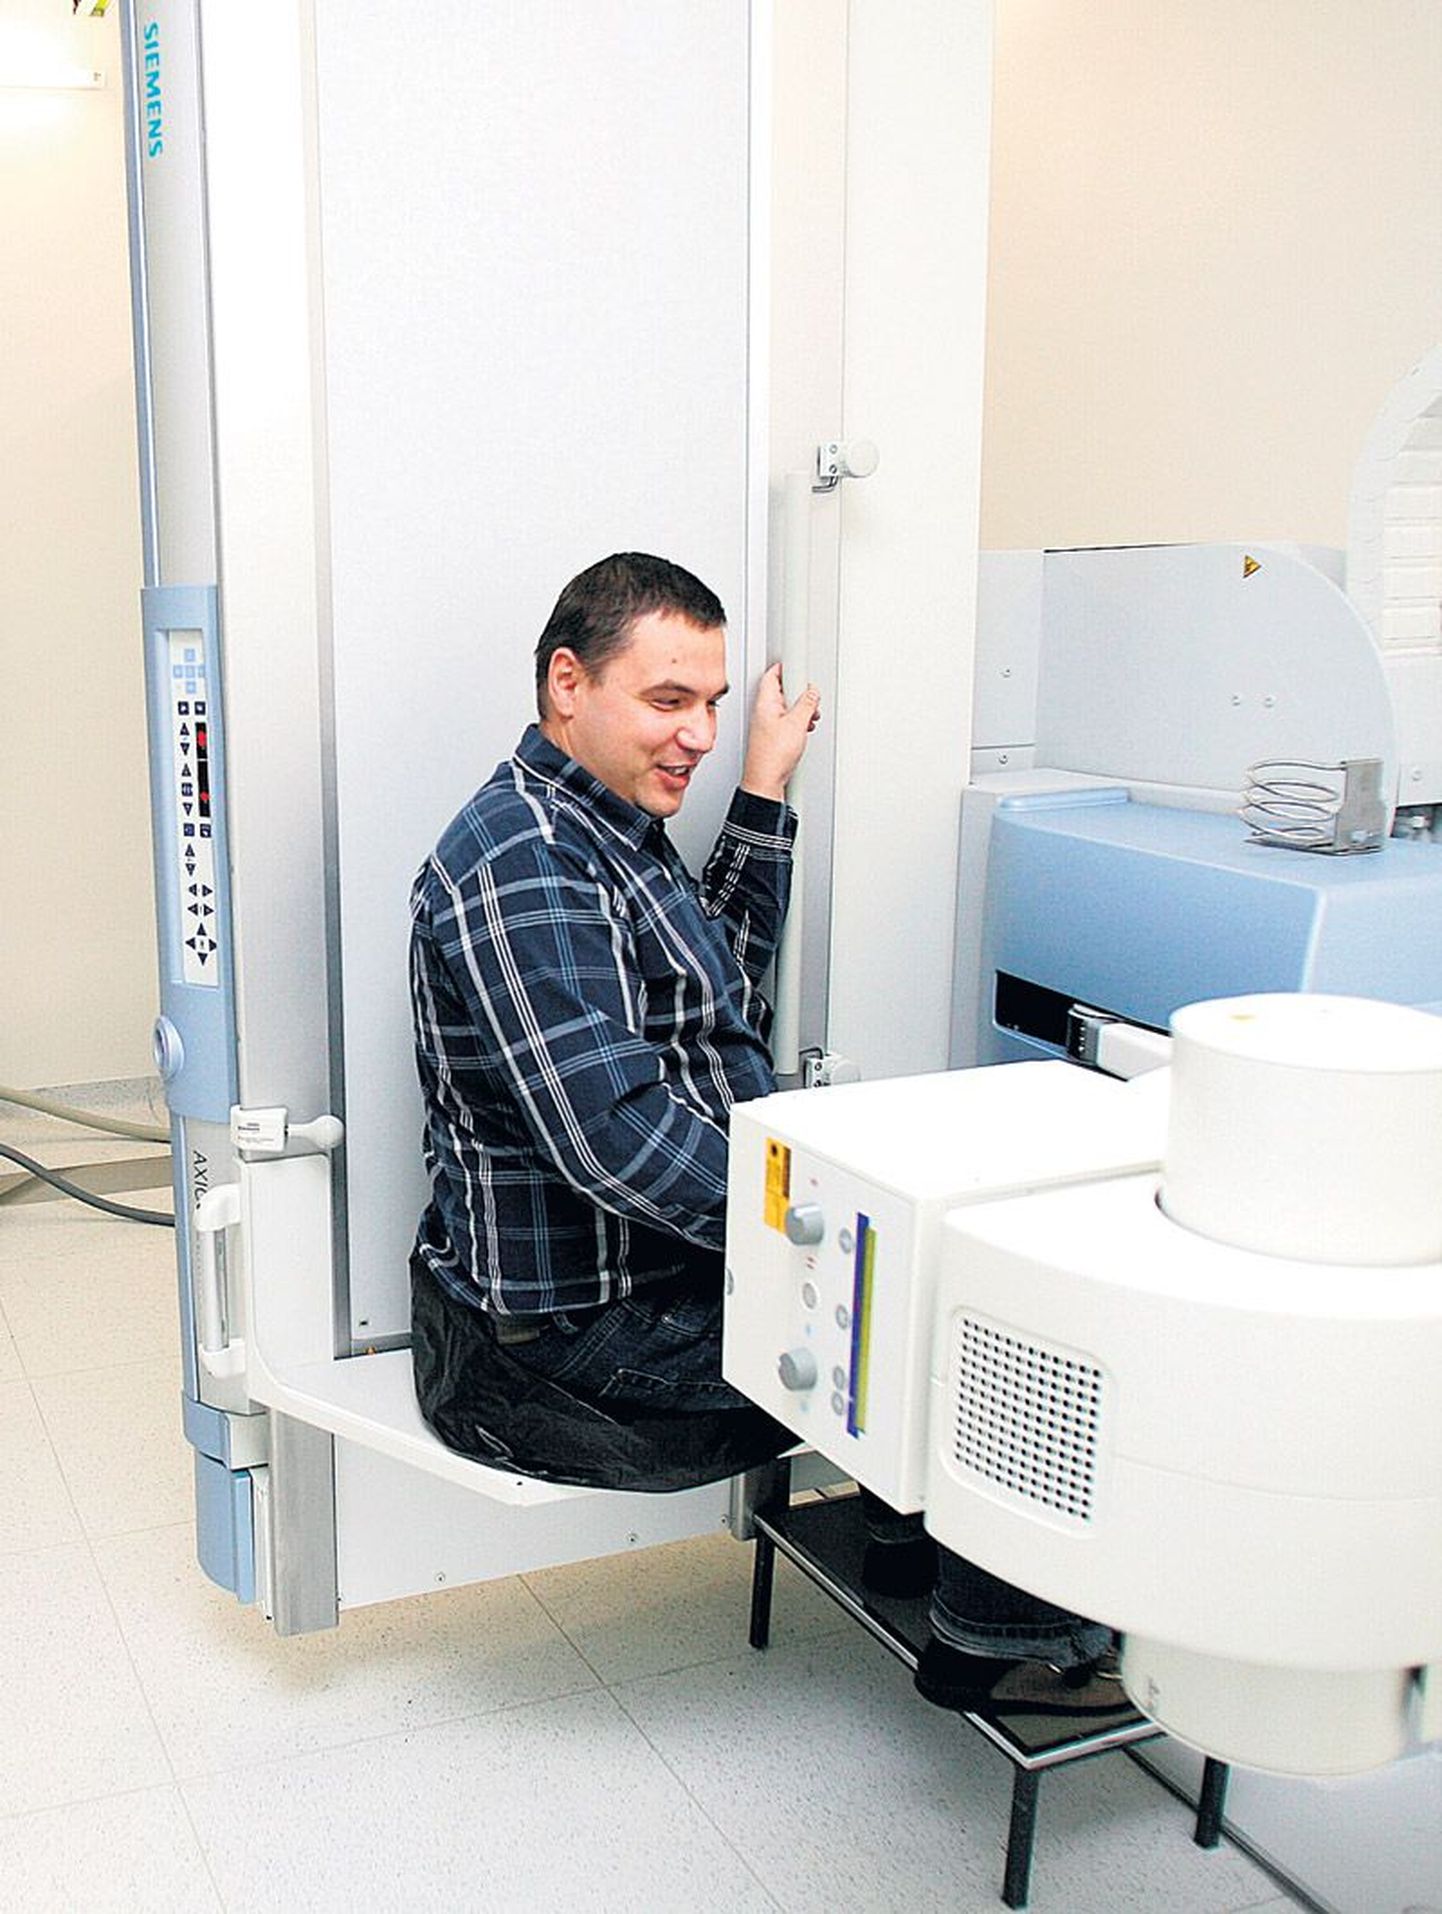 Radioloogiateenistuse direktor Aadu Simisker ei hä­bene näi­data, kuidas patsient röntgenikabinetis istuma peab, kui potilkäimise uuringut tegema hakatakse.